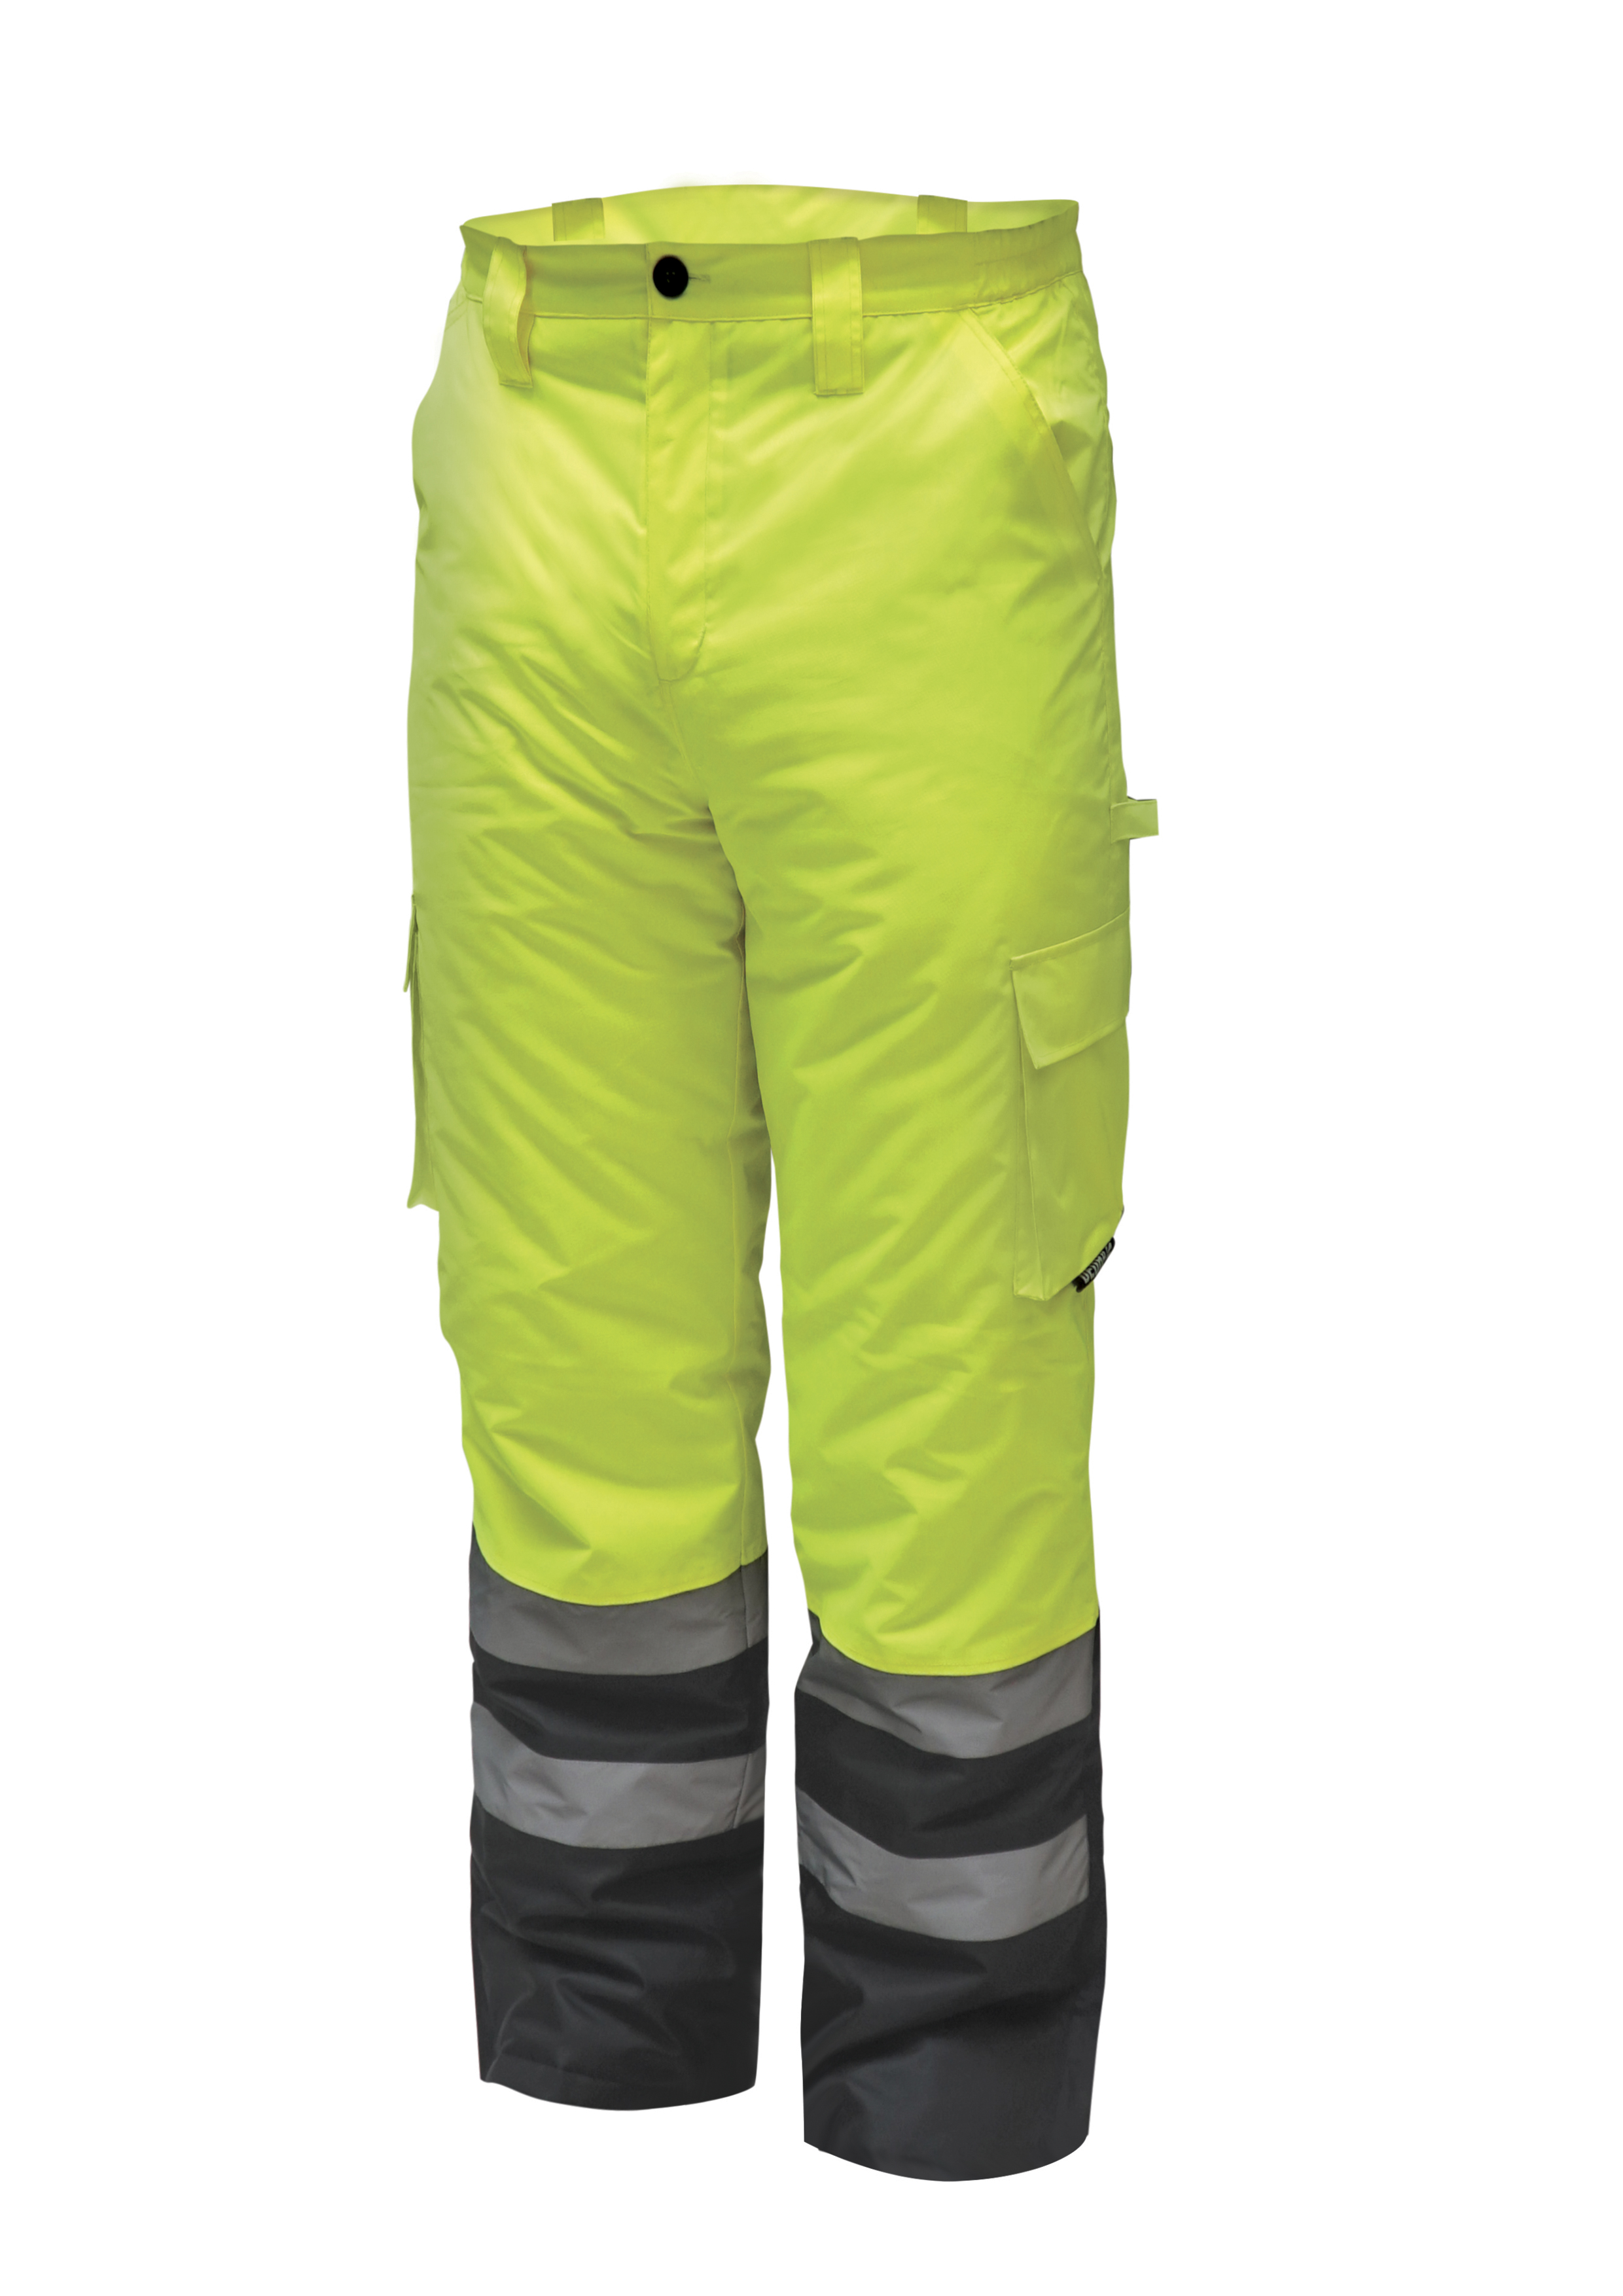 Reflexní zateplené kalhoty vel. XXL, žluté DEDRA BH80SP1-XXL + Dárek, servis bez starostí v hodnotě 300Kč